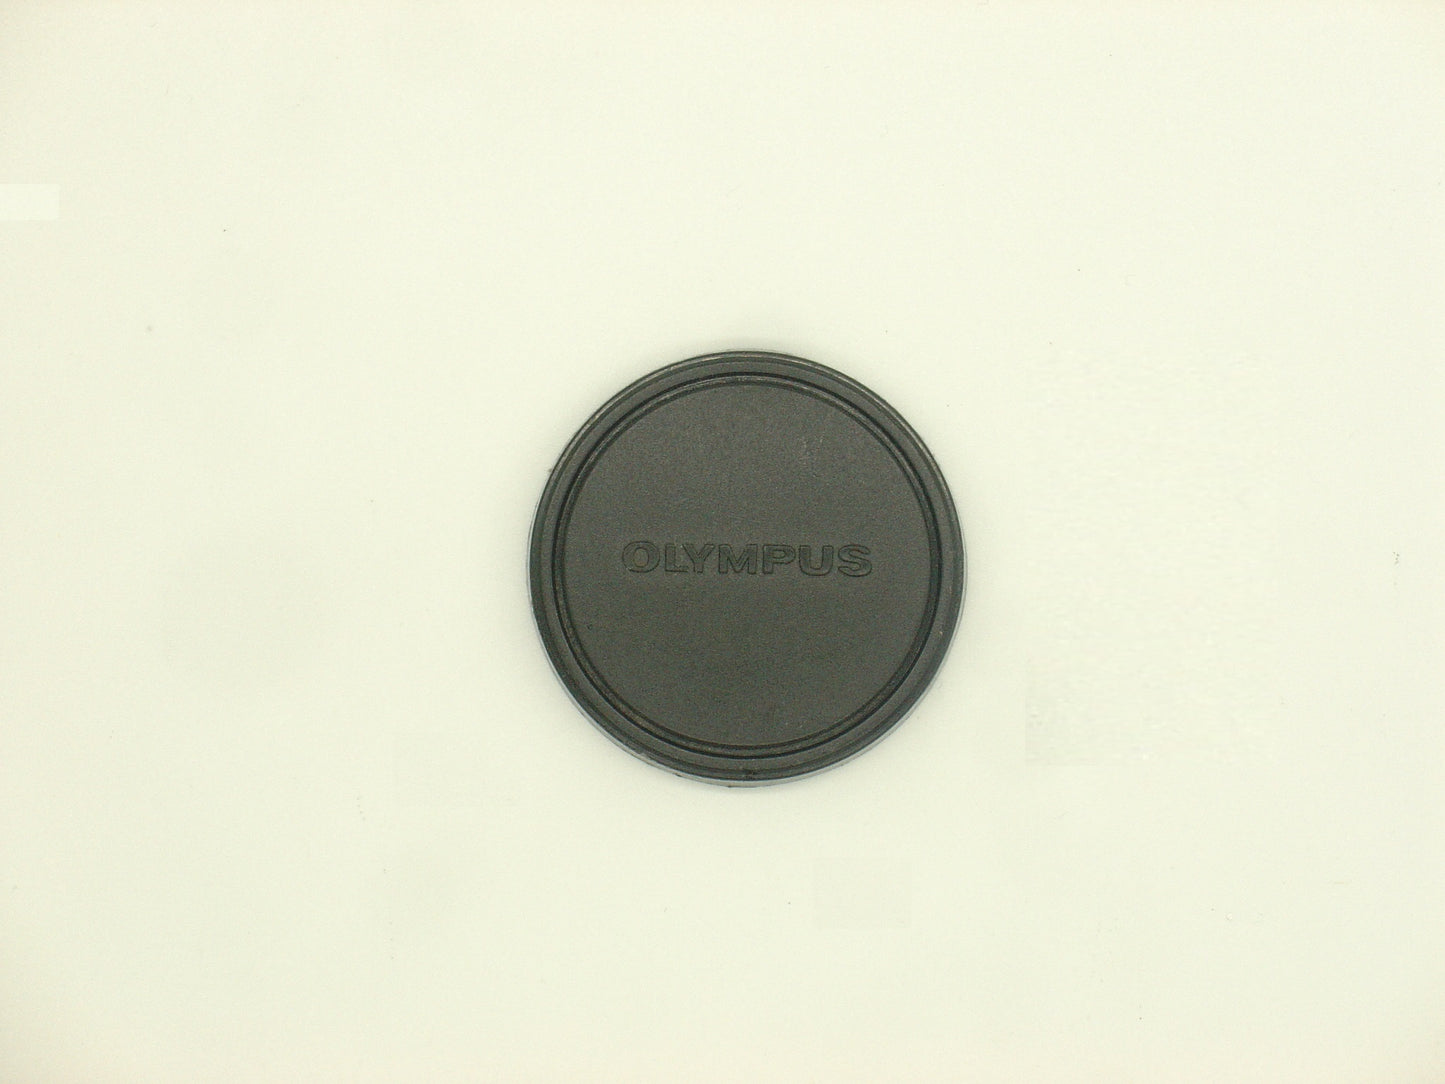 Original Olympus Lens Cap - fits Trip 35, 35 EC, 35 ECR, Pen D / D3, Pen EE